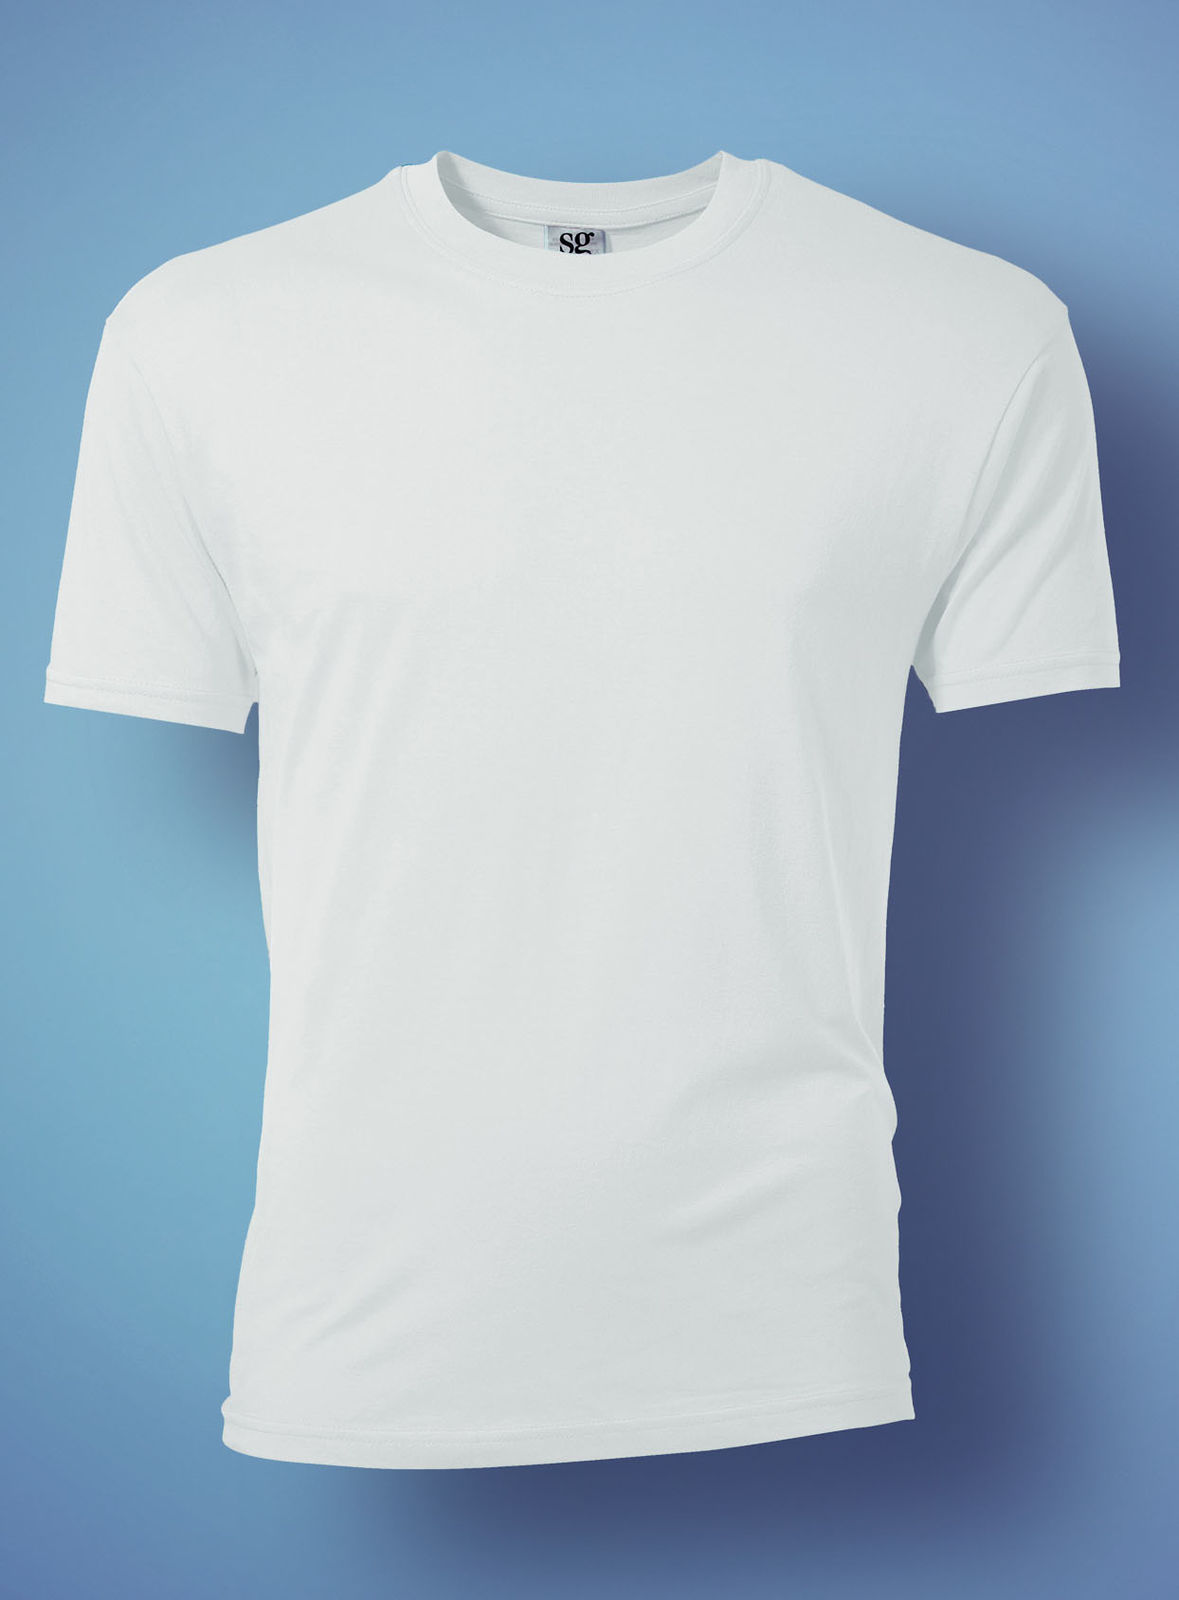 Vuqe, T Shirt Personnalisé Pour Homme, T-shirts publicitaires pour  Entreprises et Associations